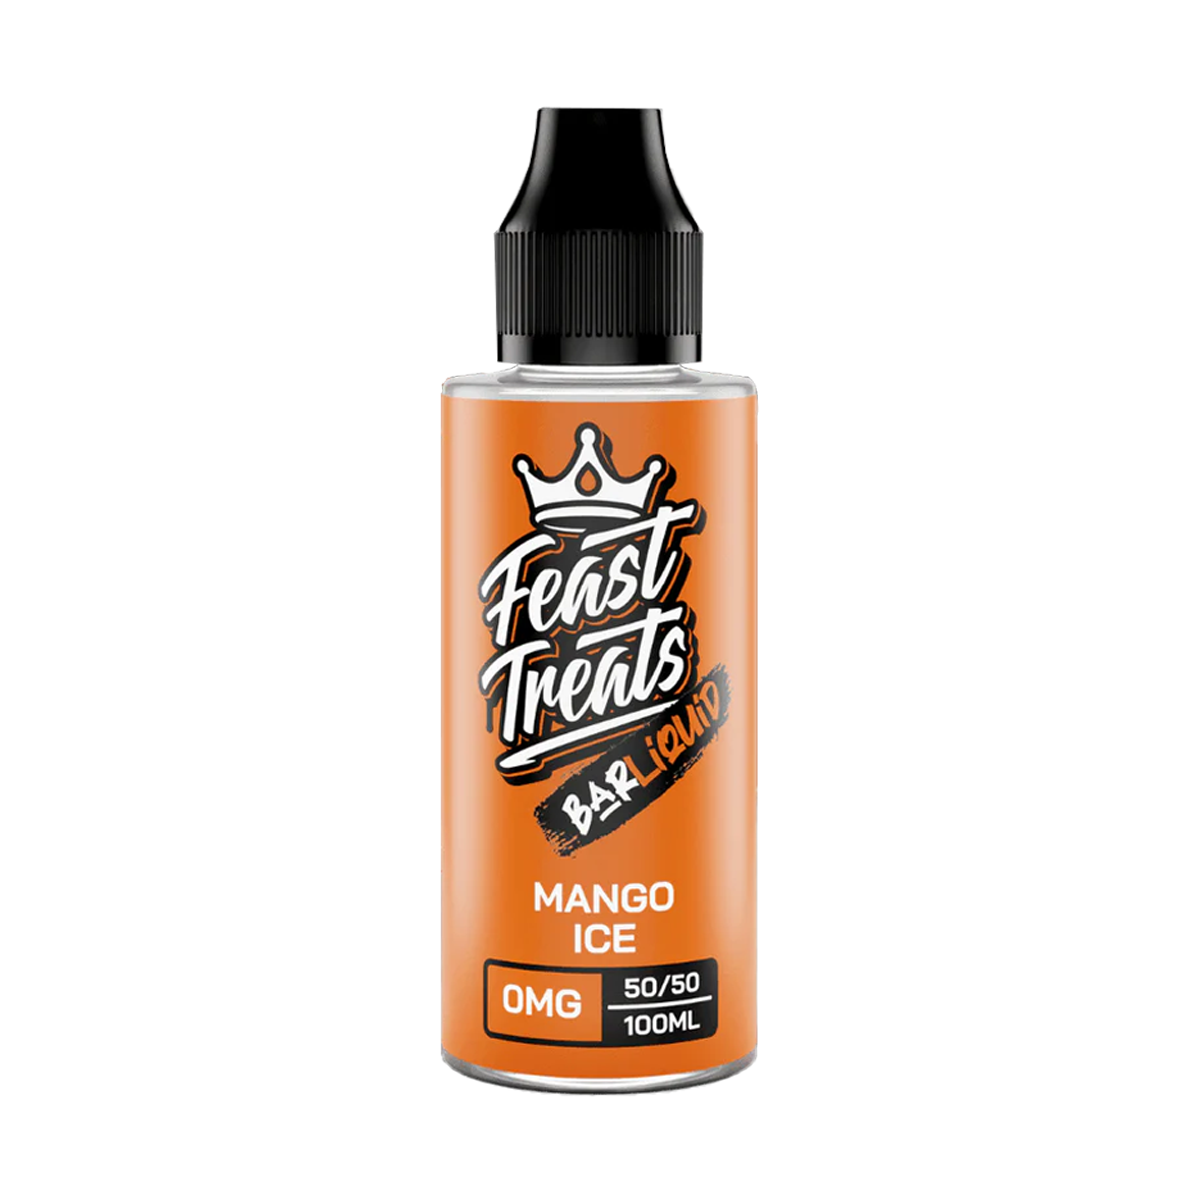 Mango Ice 100ml Shortfill E-Liquid by Feast Treats